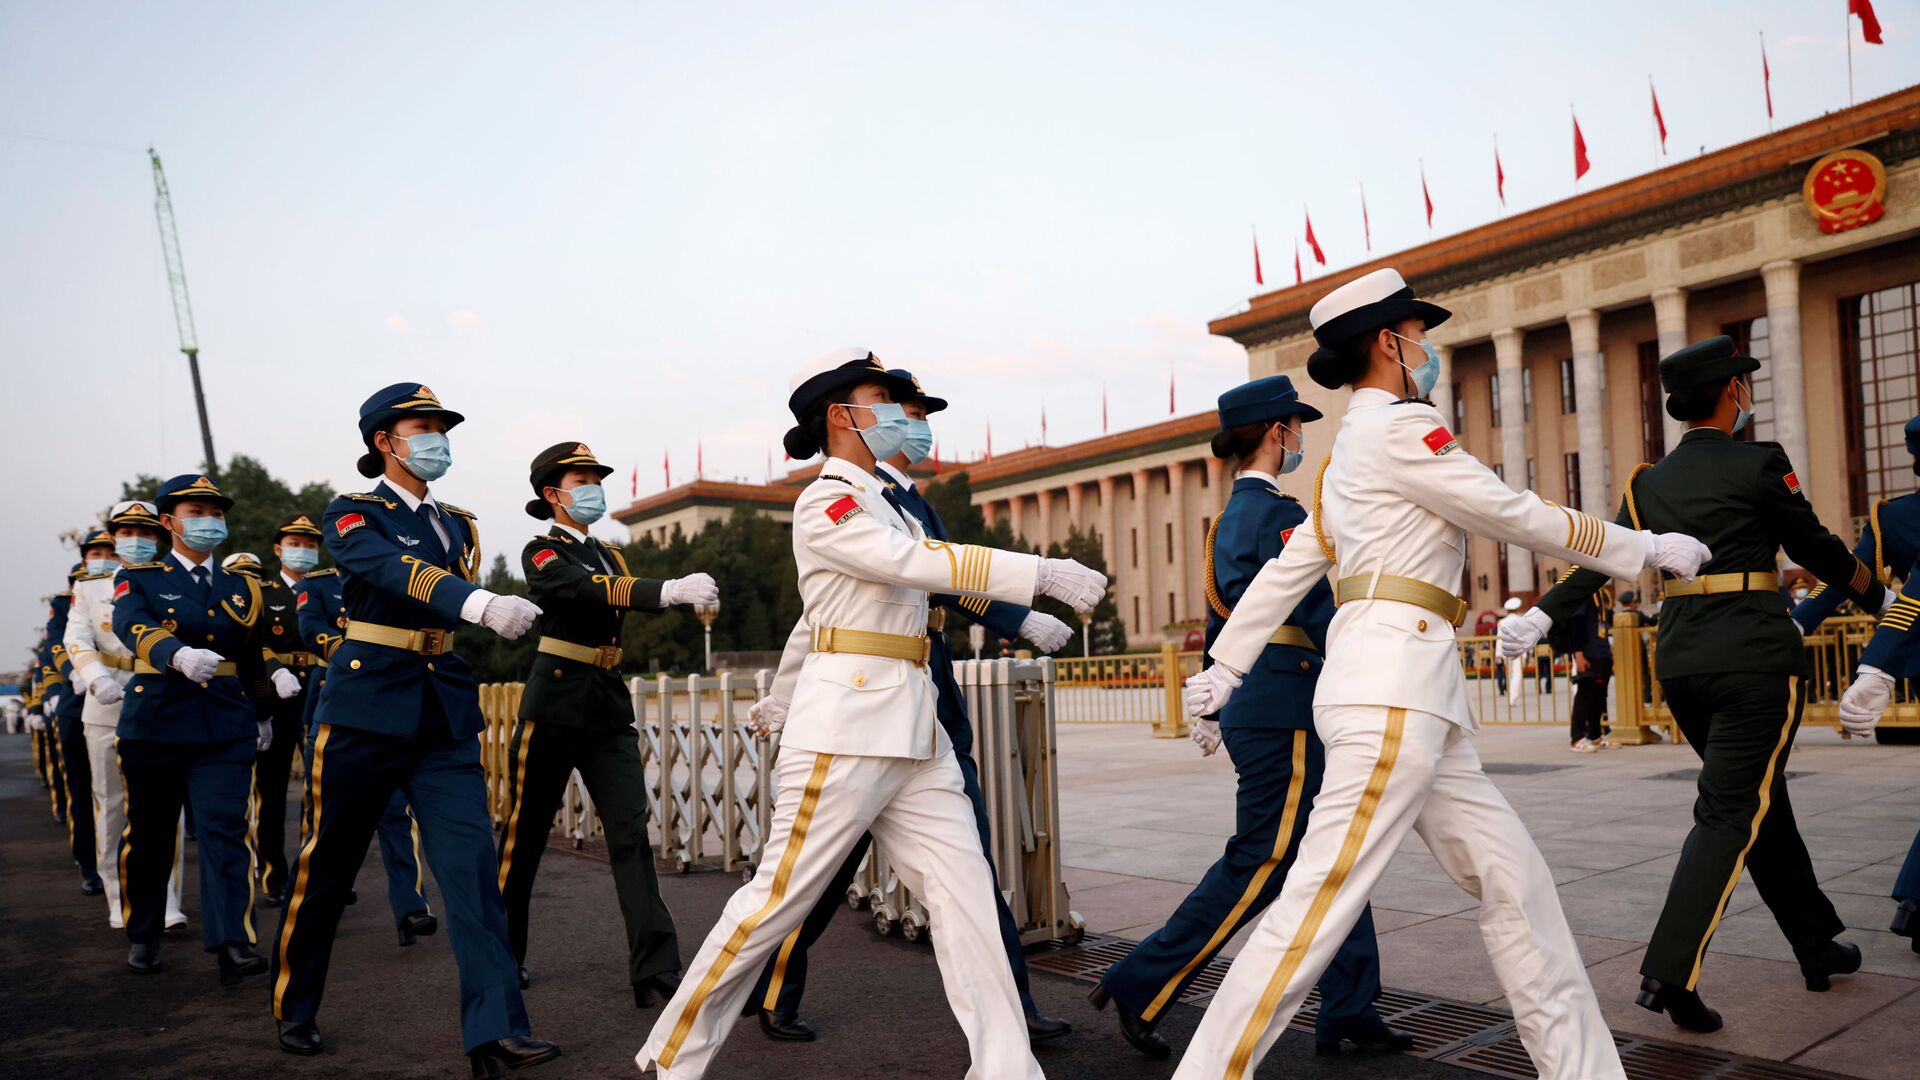 Военные на праздновании 100-летия Коммунистической партии Китая в Пекине - Sputnik Србија, 1920, 04.07.2021